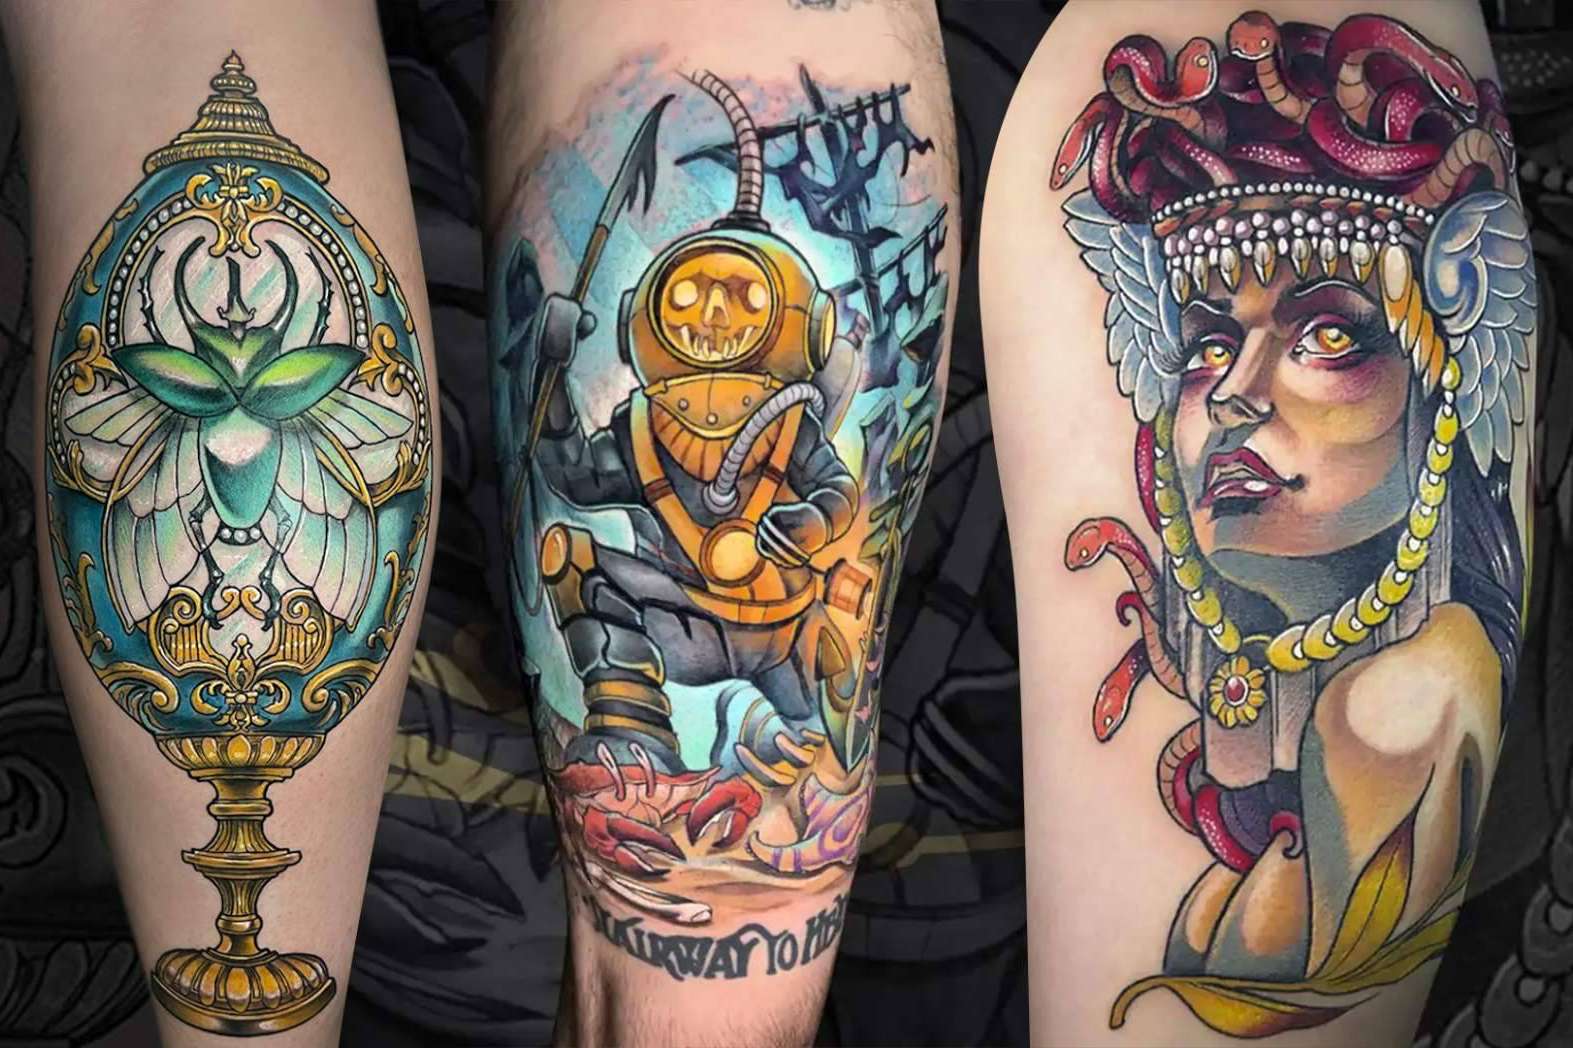 Cómo escoger a un artista para el próximo tattoo? Las recomendaciones de La Piratería Tattoo - Hechos de Hoy